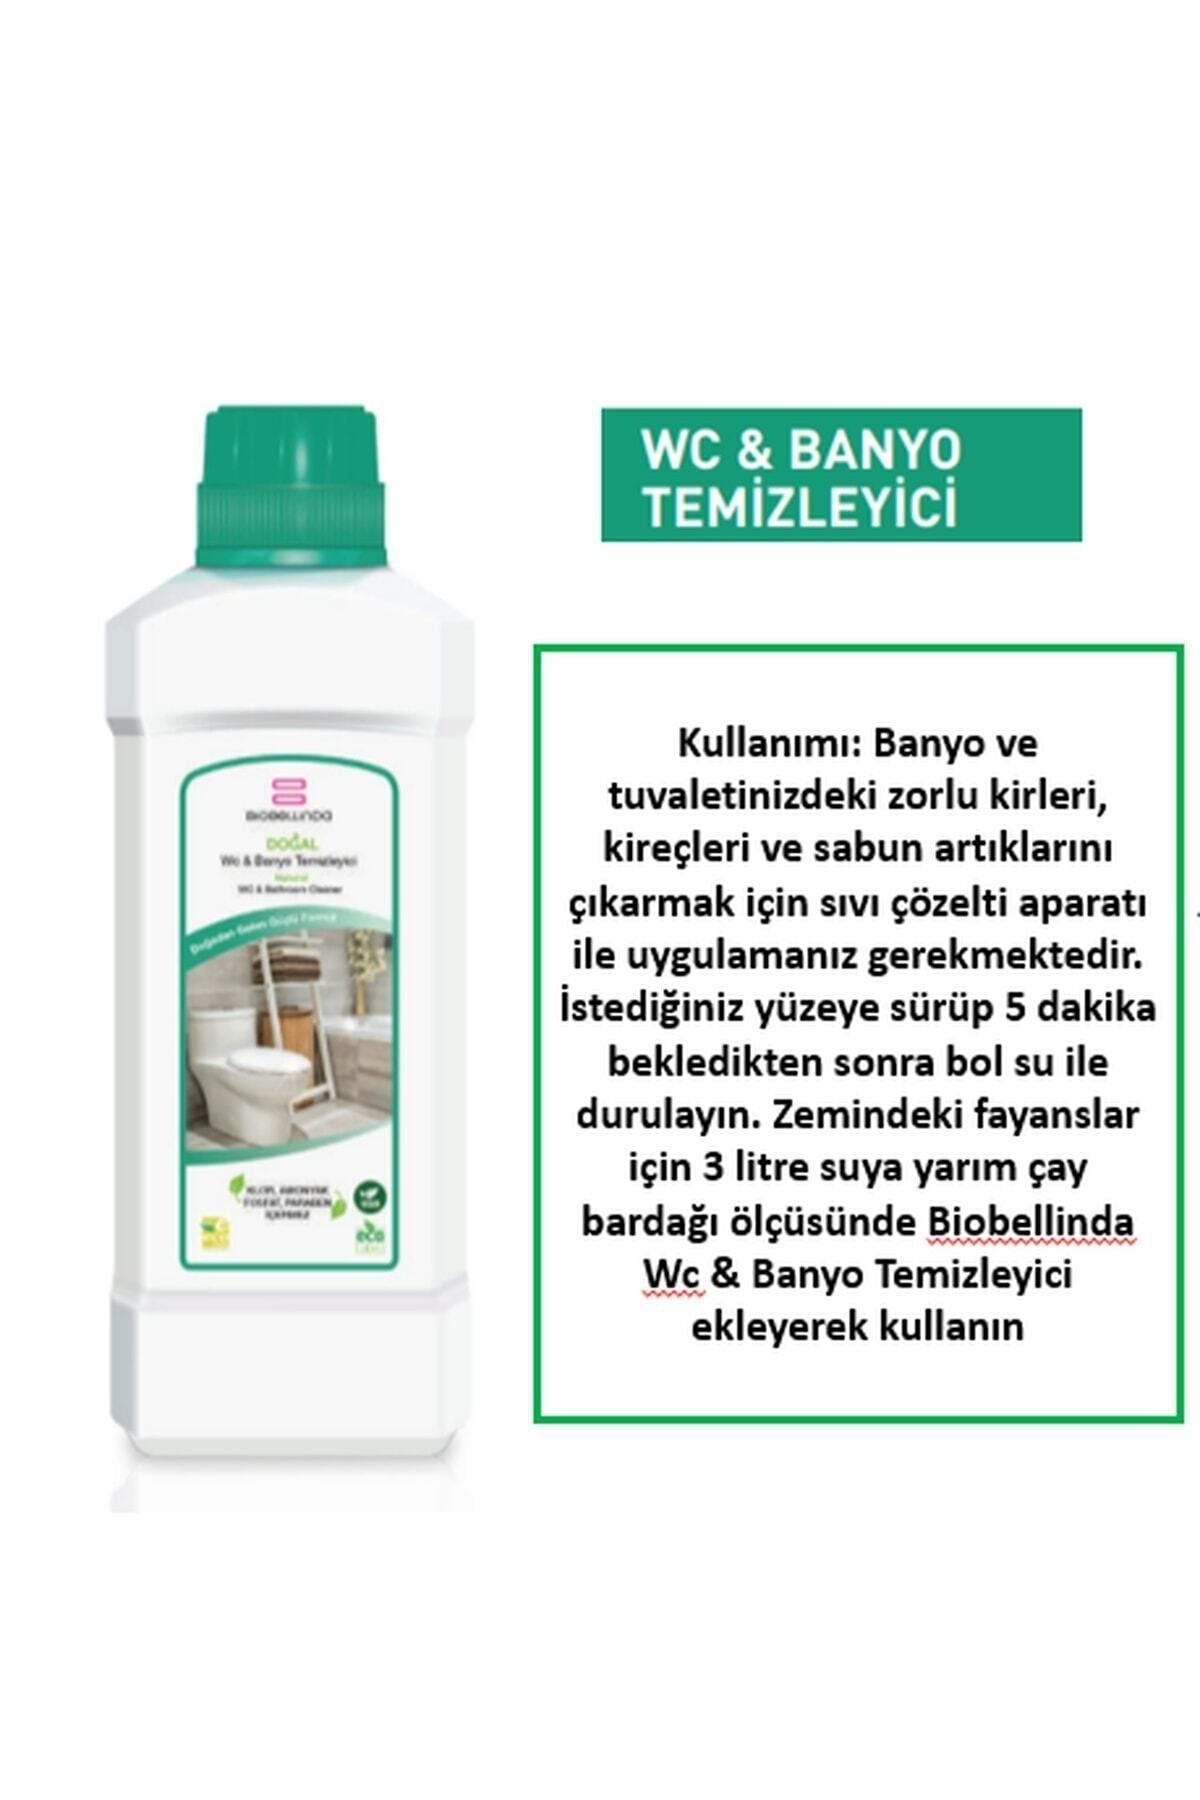 BioBellinda Wc & Banyo Temizleyici